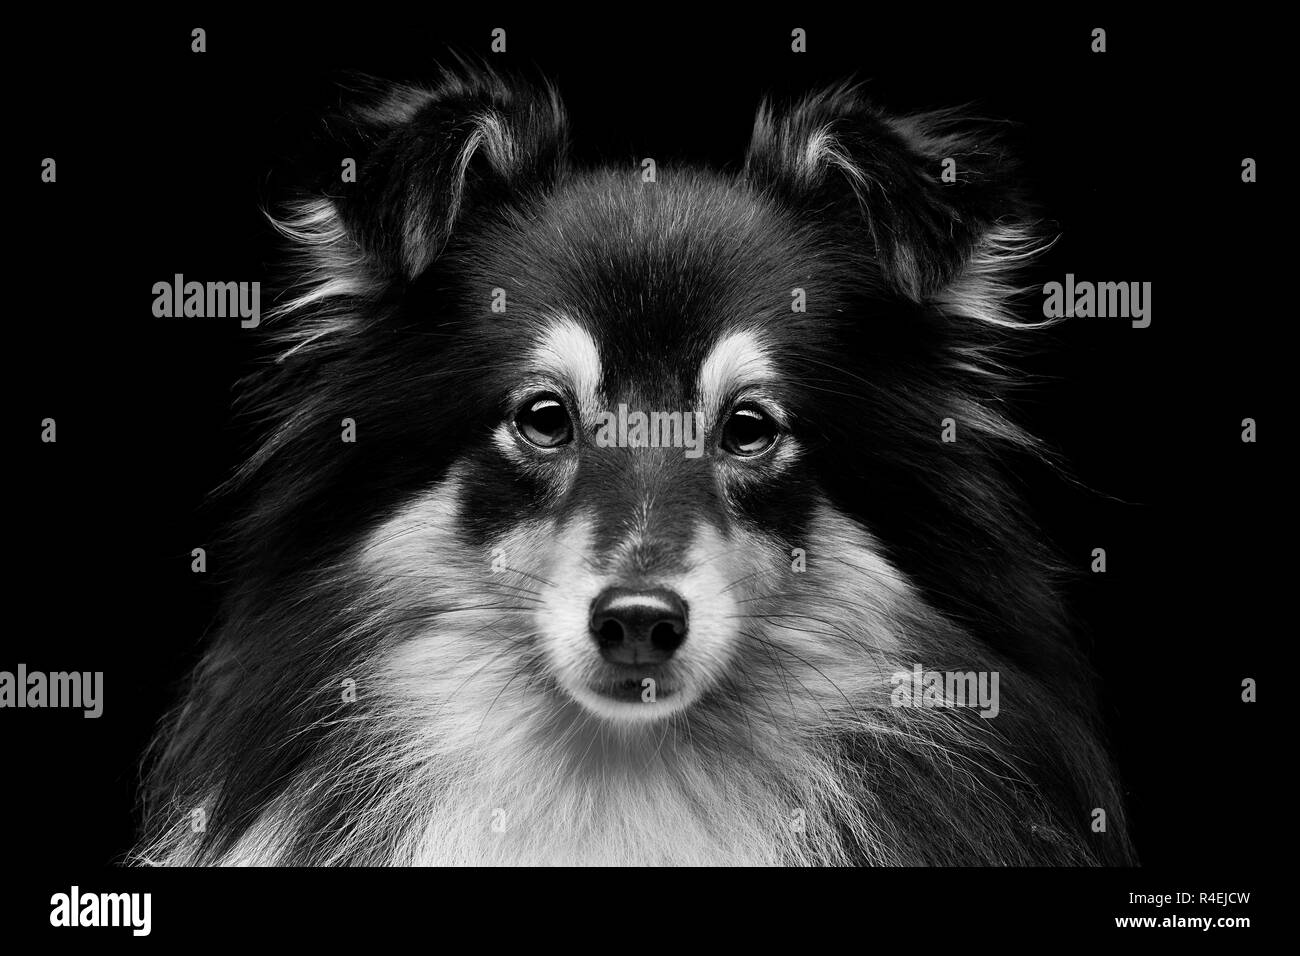 Shetland sheepdog Black and White Stock Photos & Images - Alamy